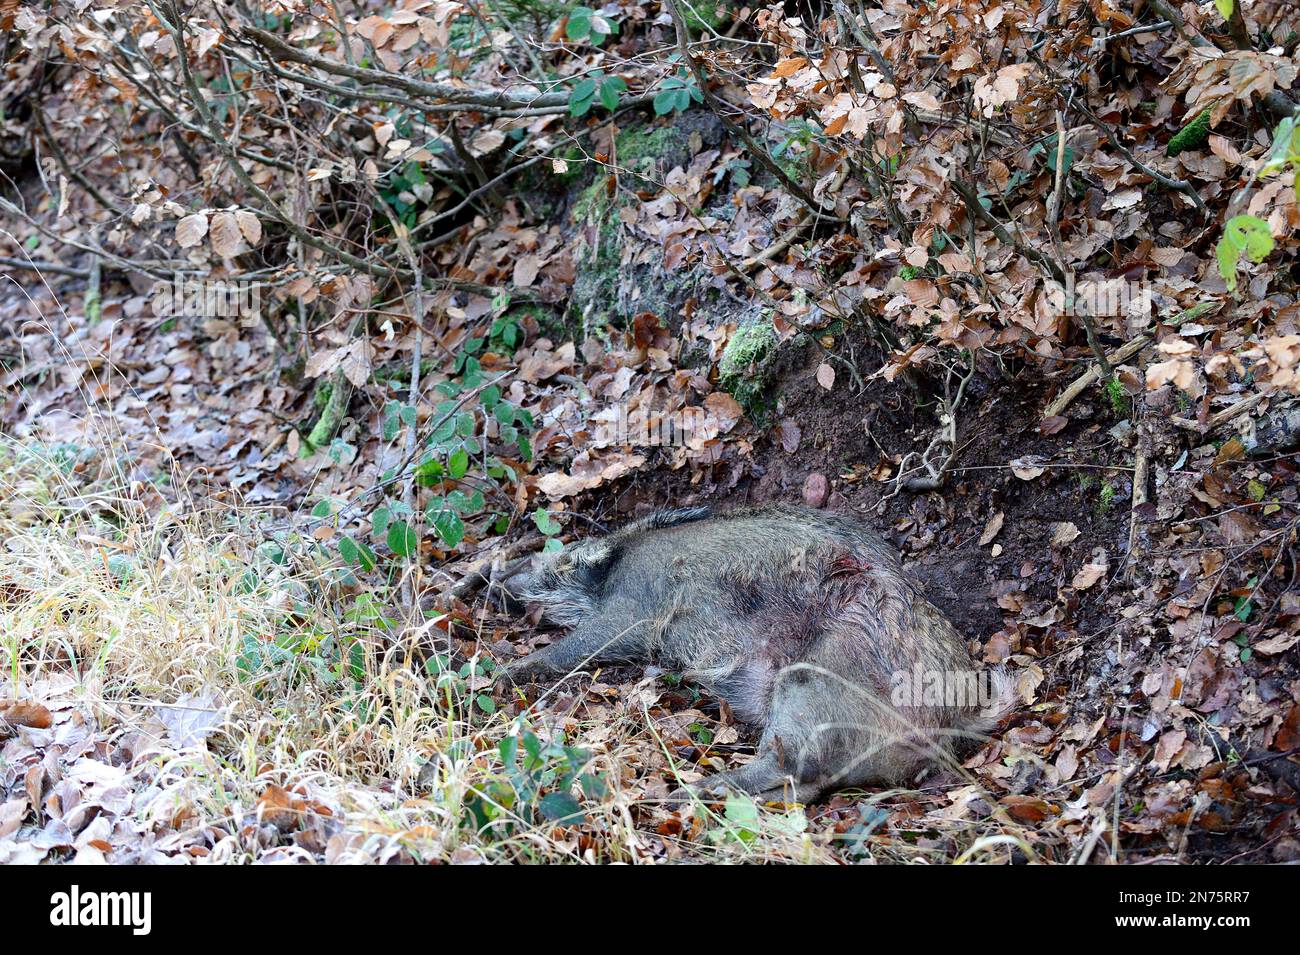 Driven hunt in Stadtprozelten, killed wild boar Stock Photo